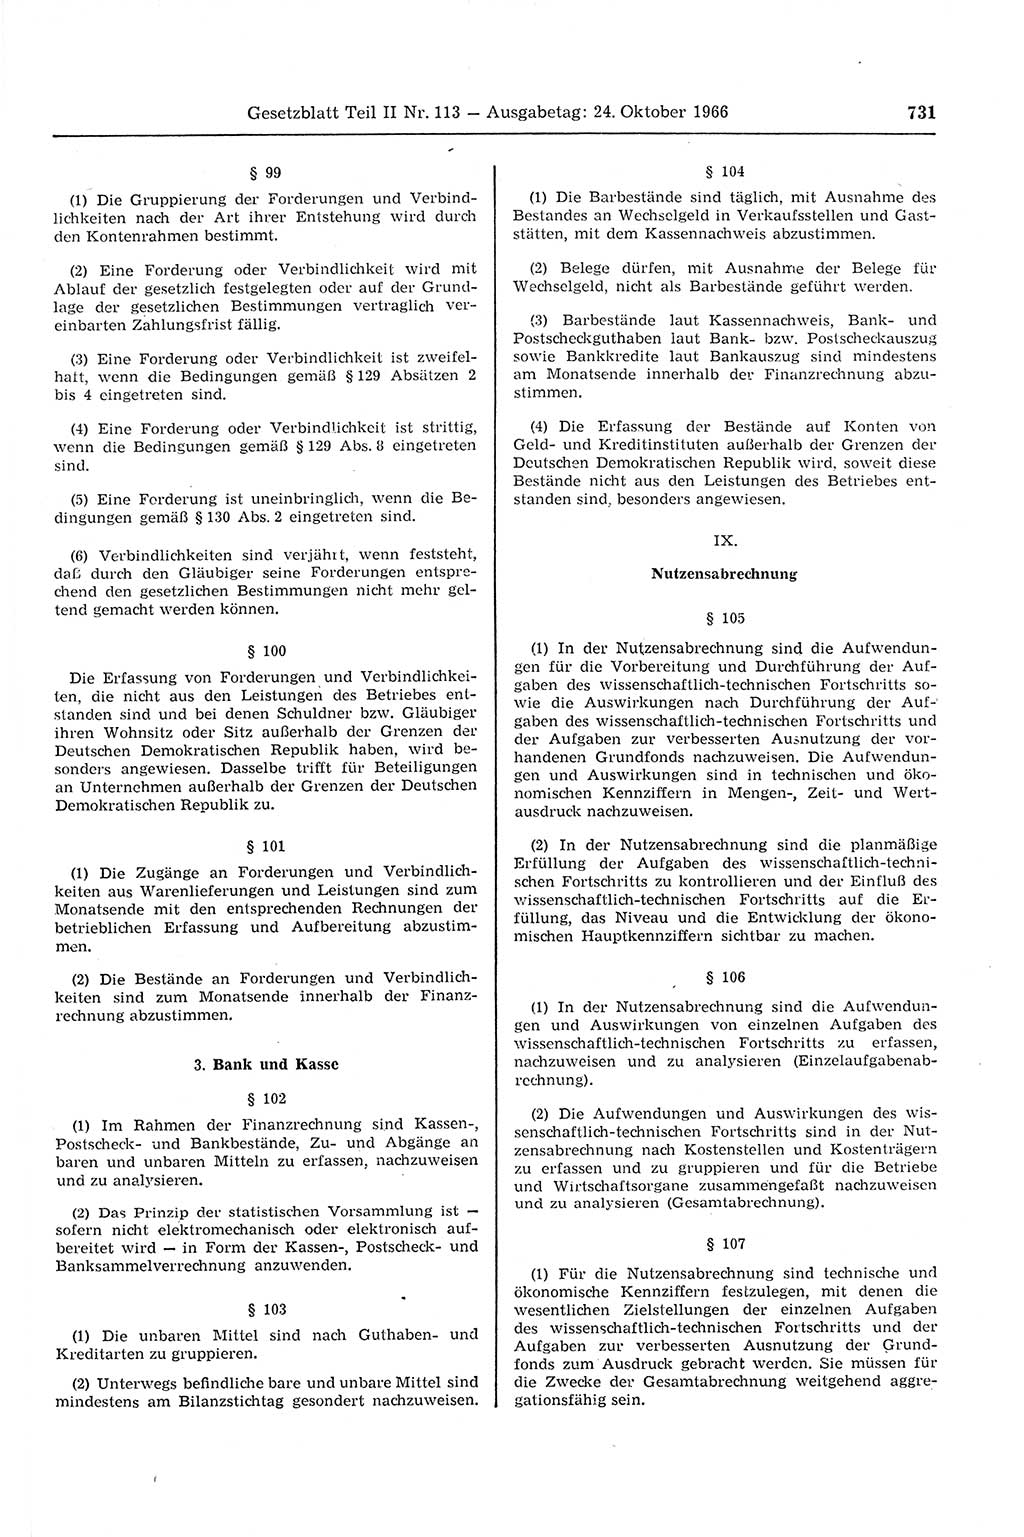 Gesetzblatt (GBl.) der Deutschen Demokratischen Republik (DDR) Teil ⅠⅠ 1966, Seite 731 (GBl. DDR ⅠⅠ 1966, S. 731)